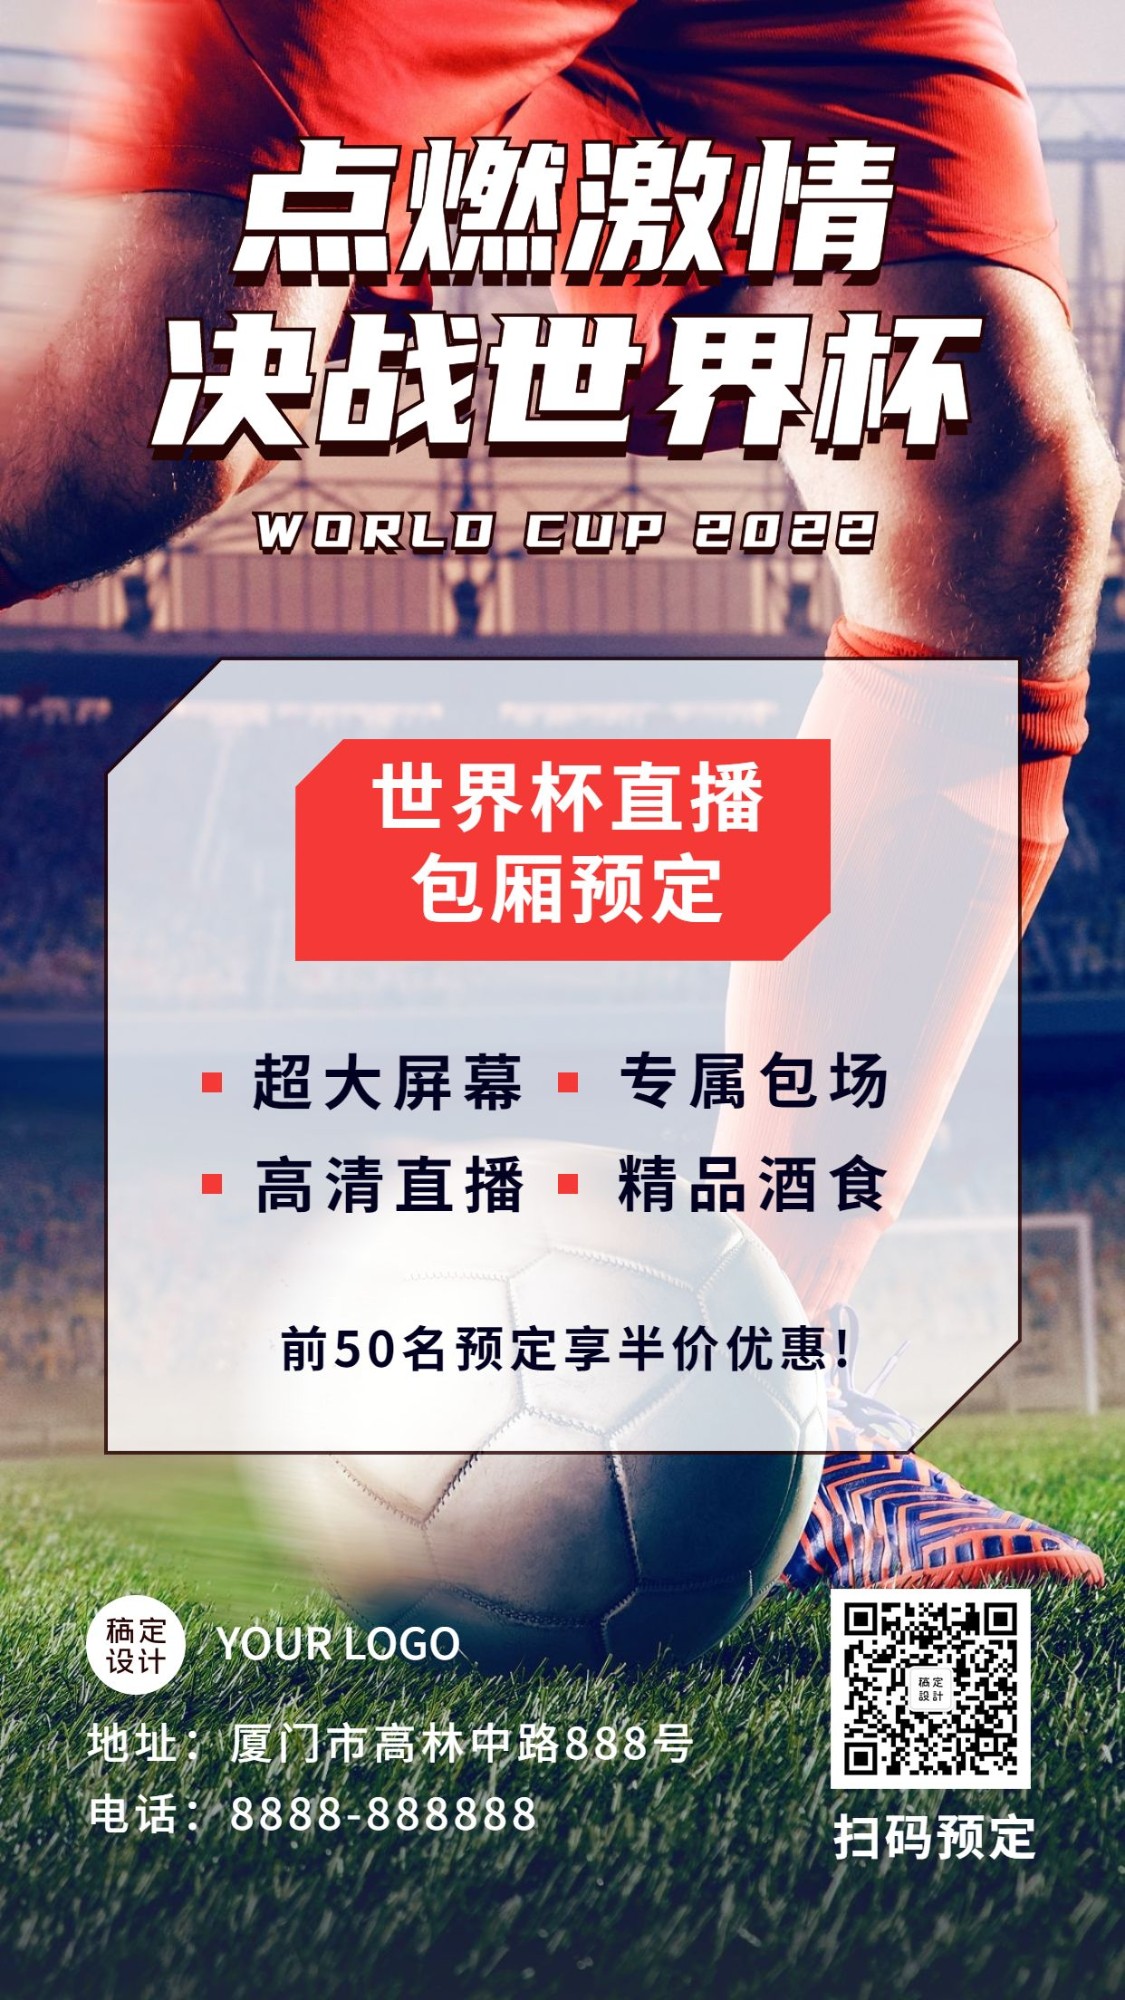 2022世界杯足球竞猜营销活动手机海报预览效果